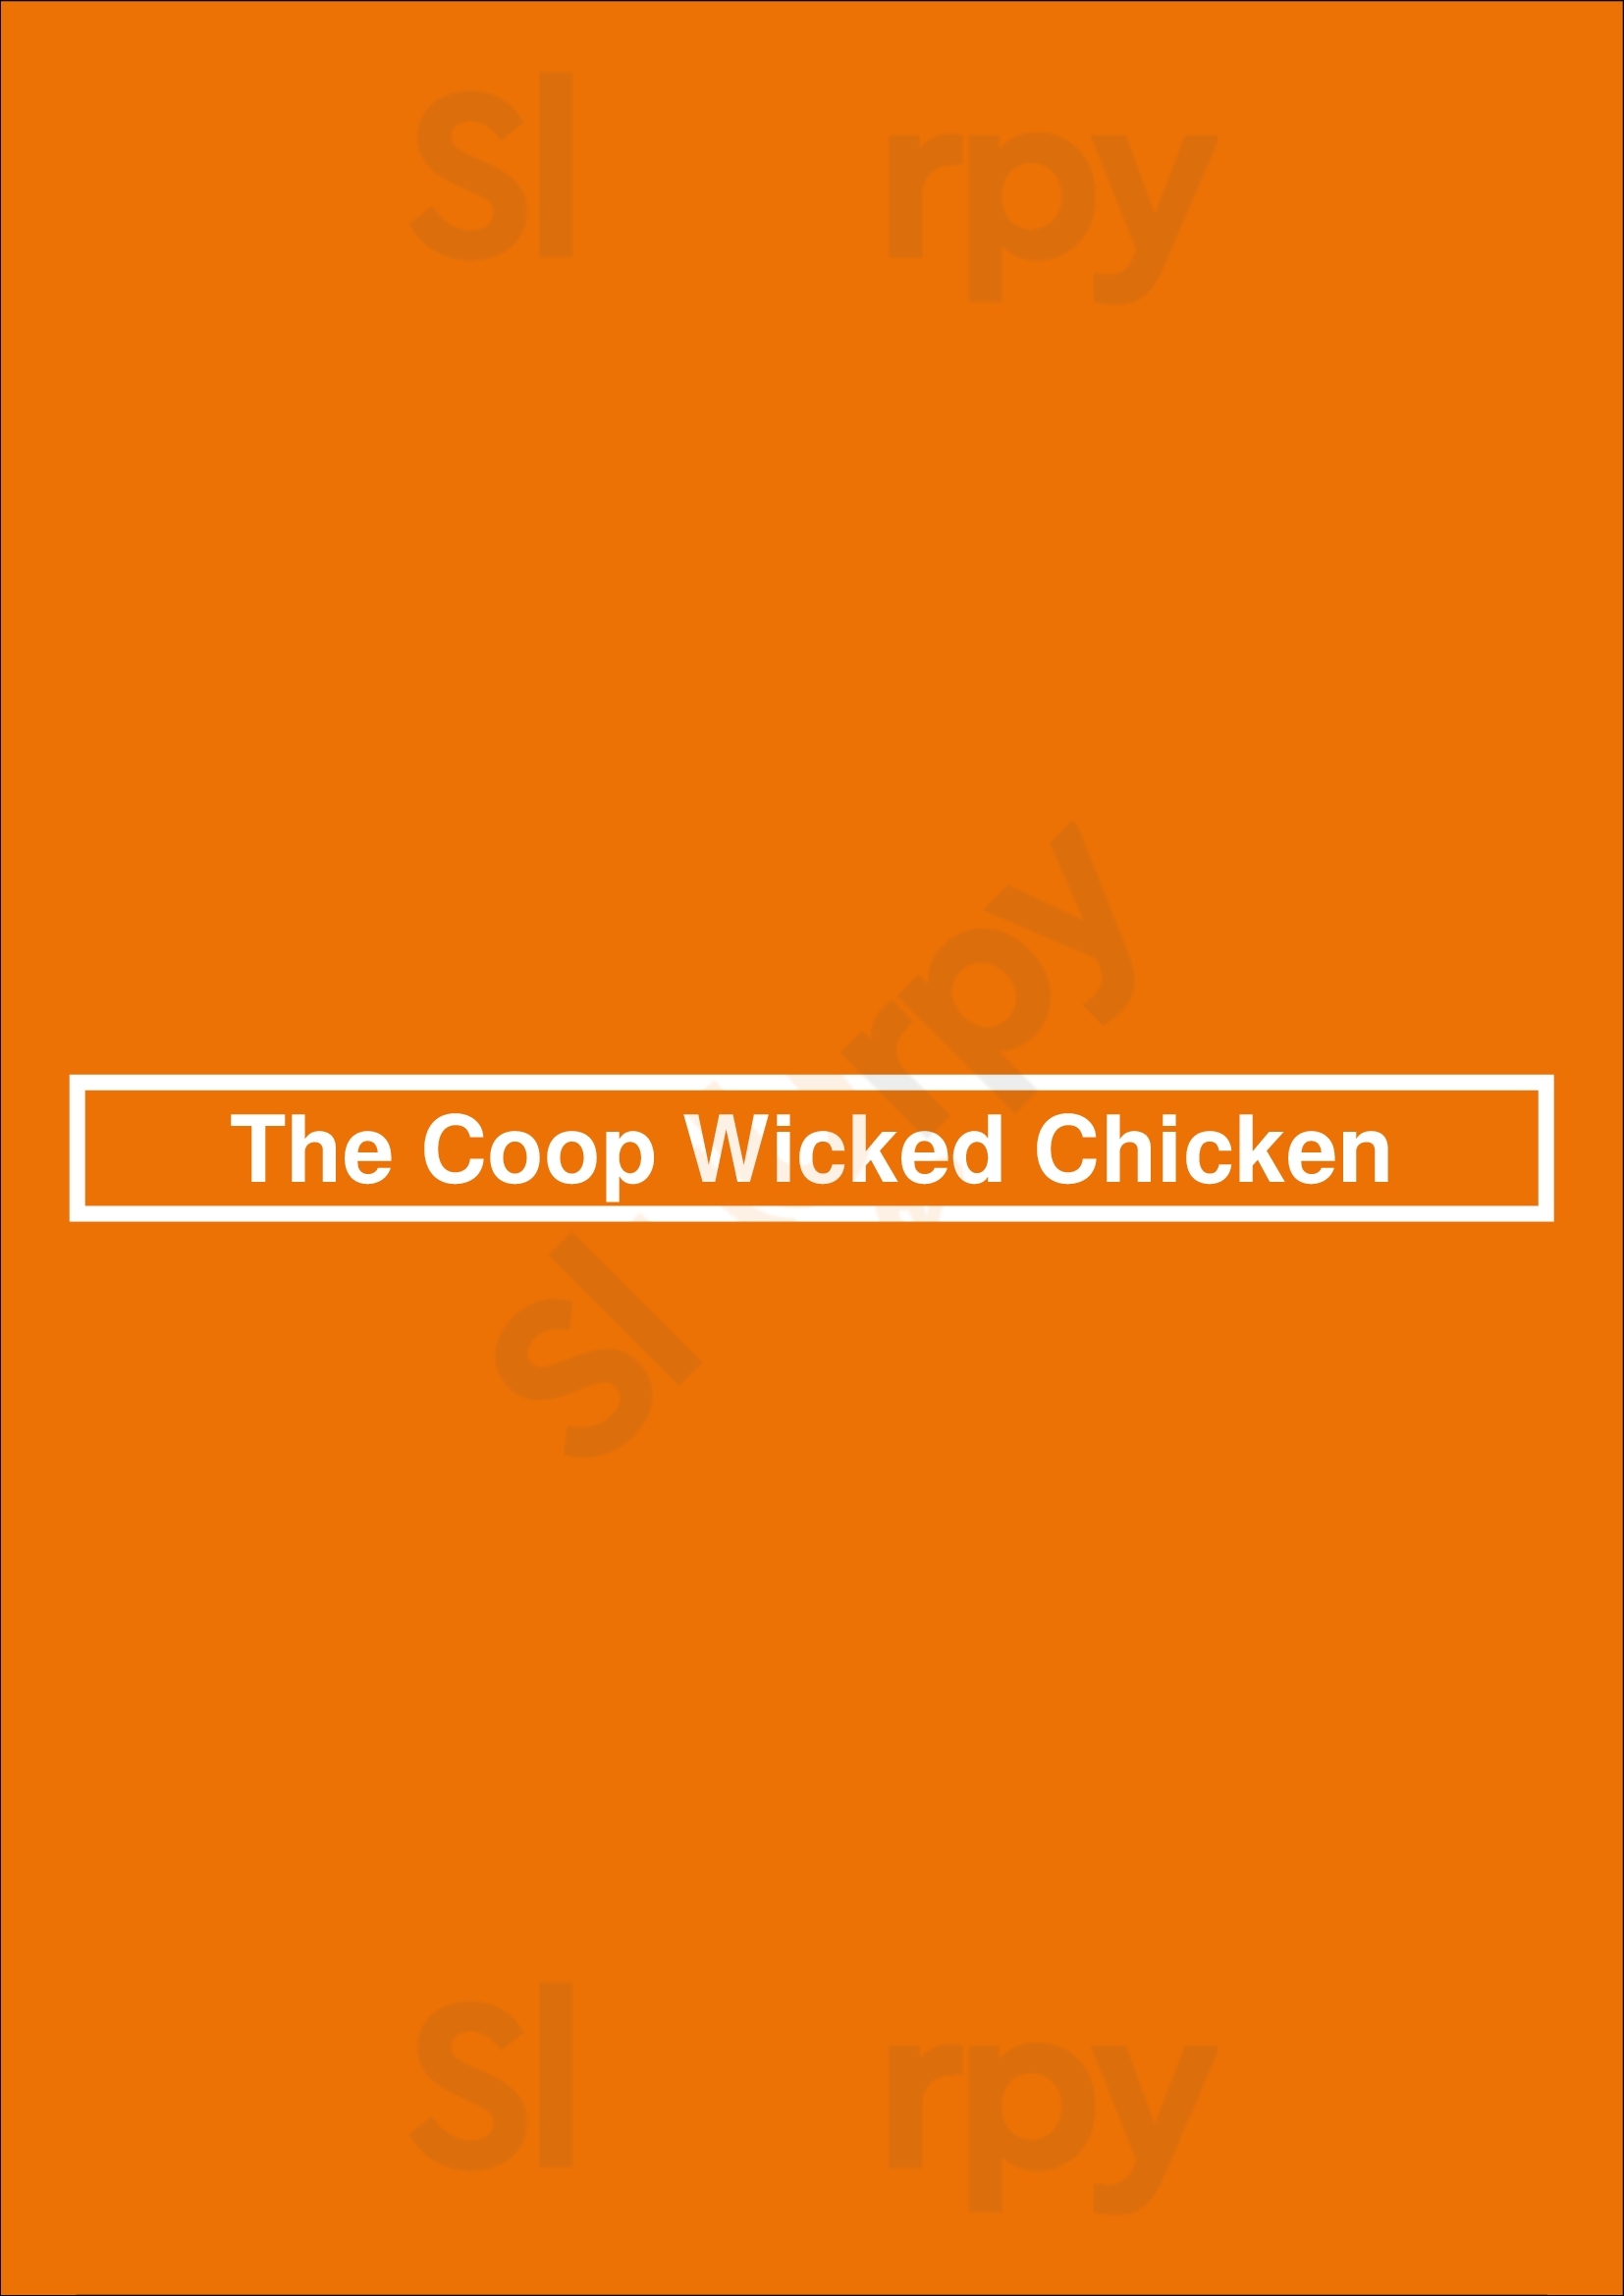 Coop Wicked Chicken Burlington Burlington Menu - 1